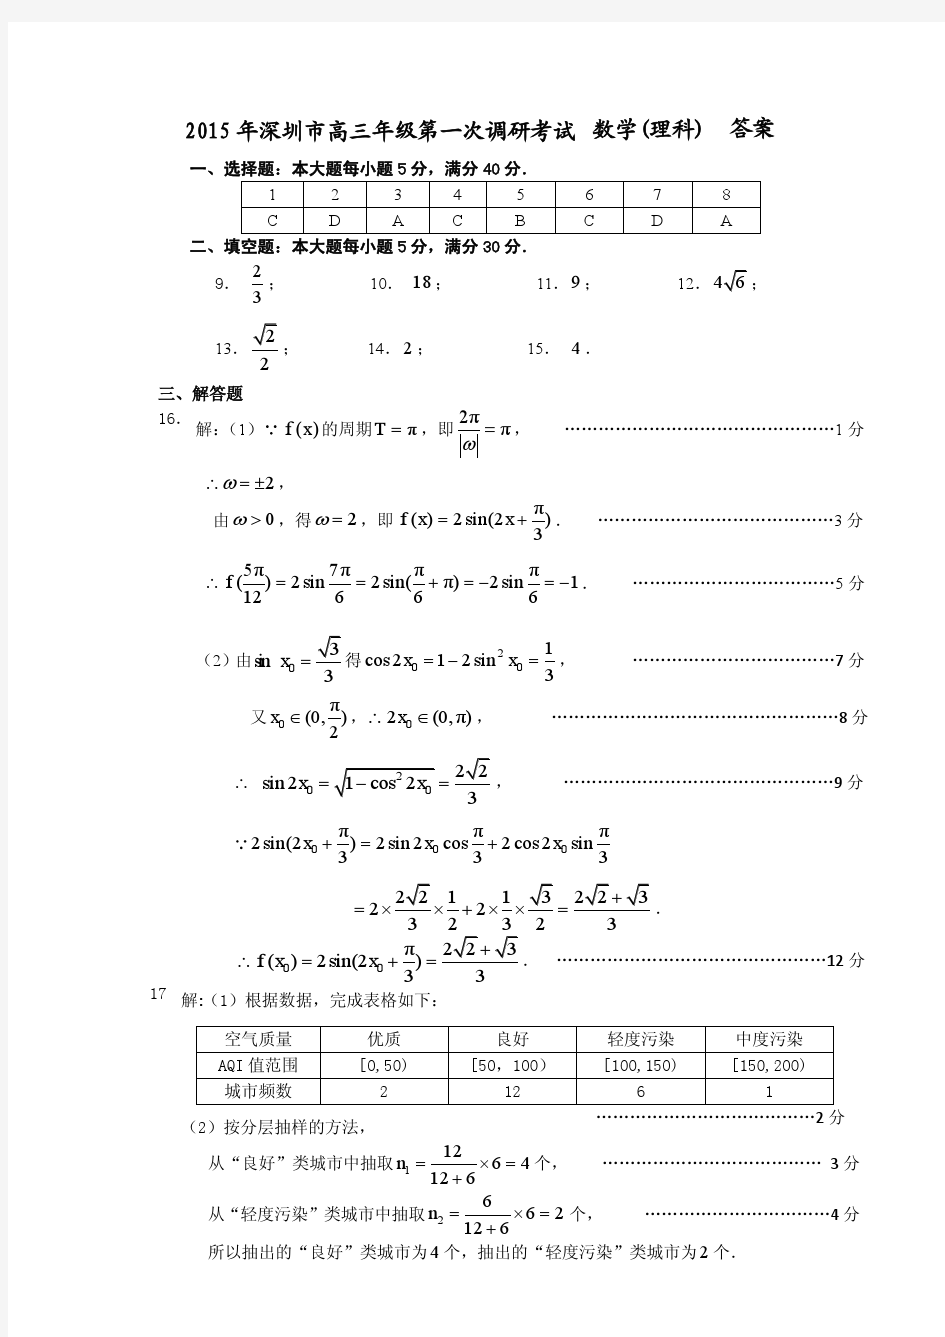 2015 年深圳市高三年级第一次调研考试 数学理科答案-精简修改版